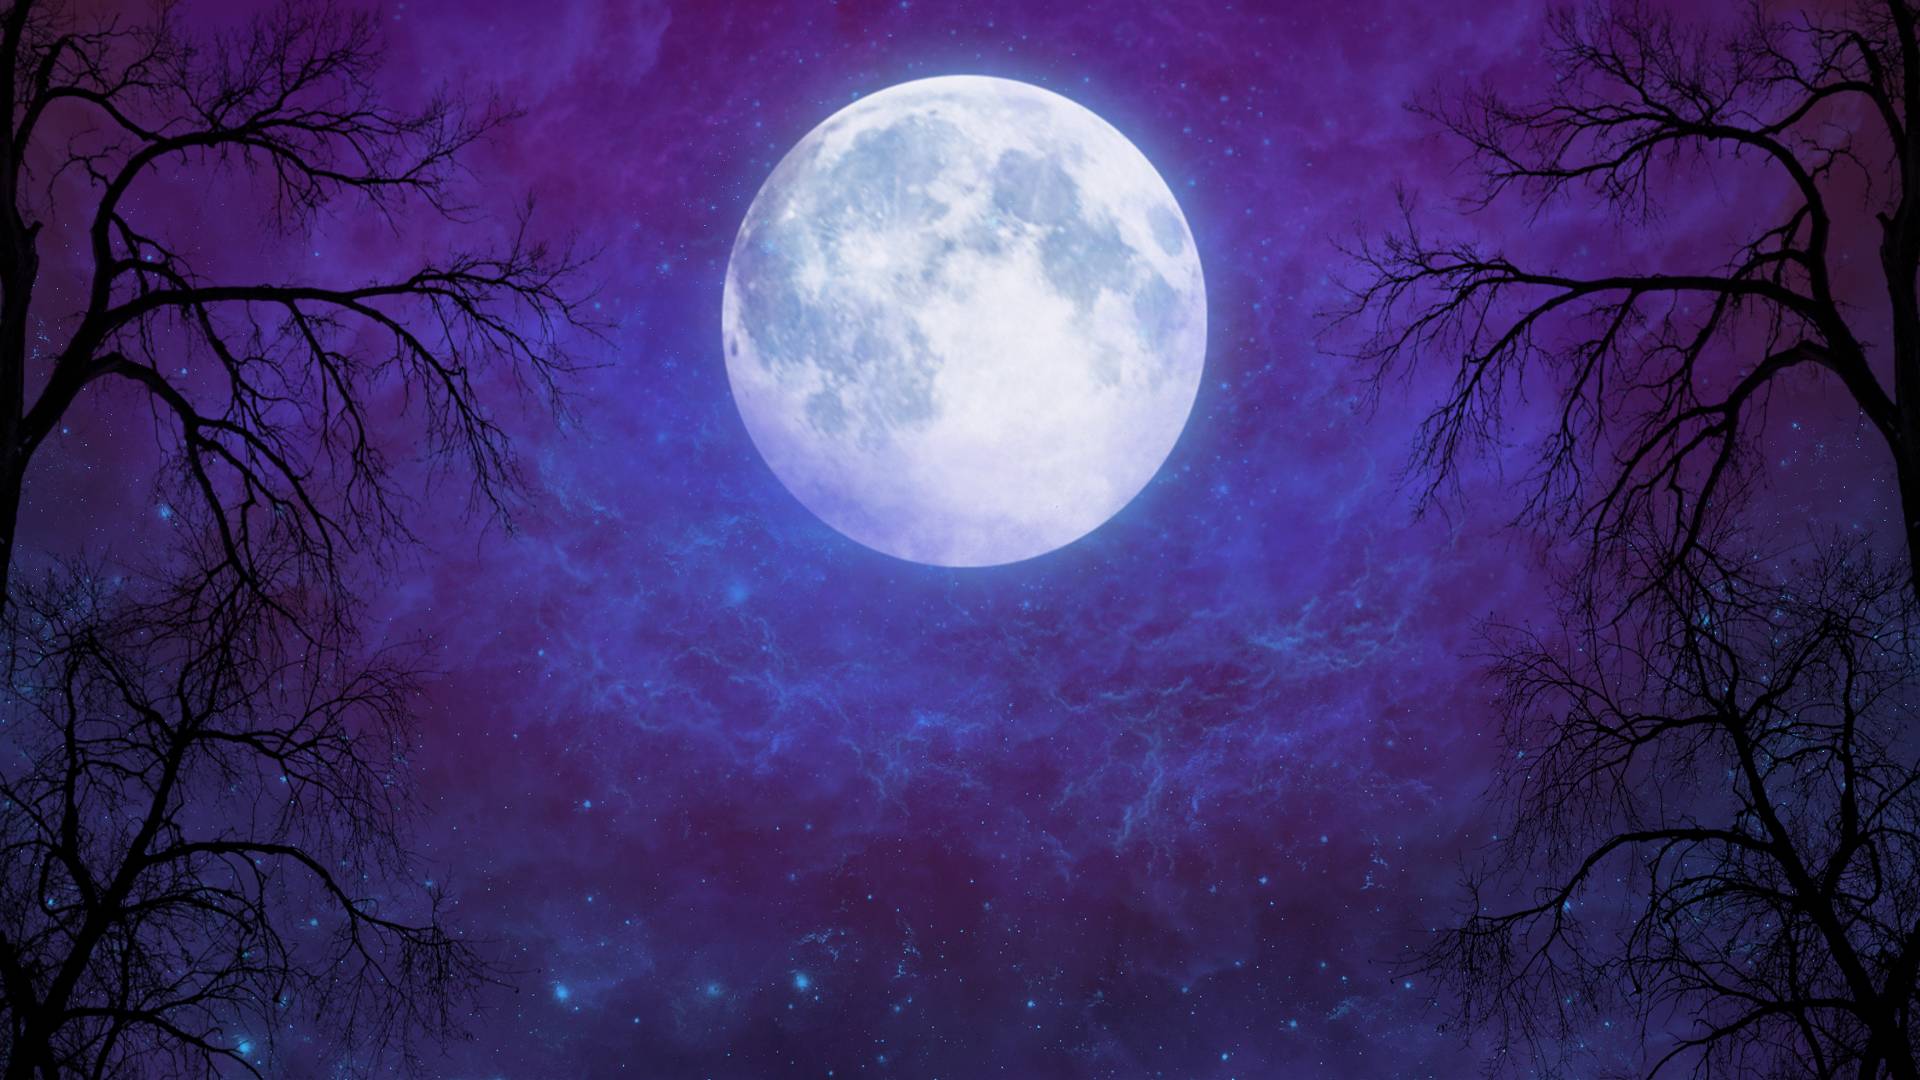 Vampire Castle Night Sky Moon Wallpaper 4K #4.3292